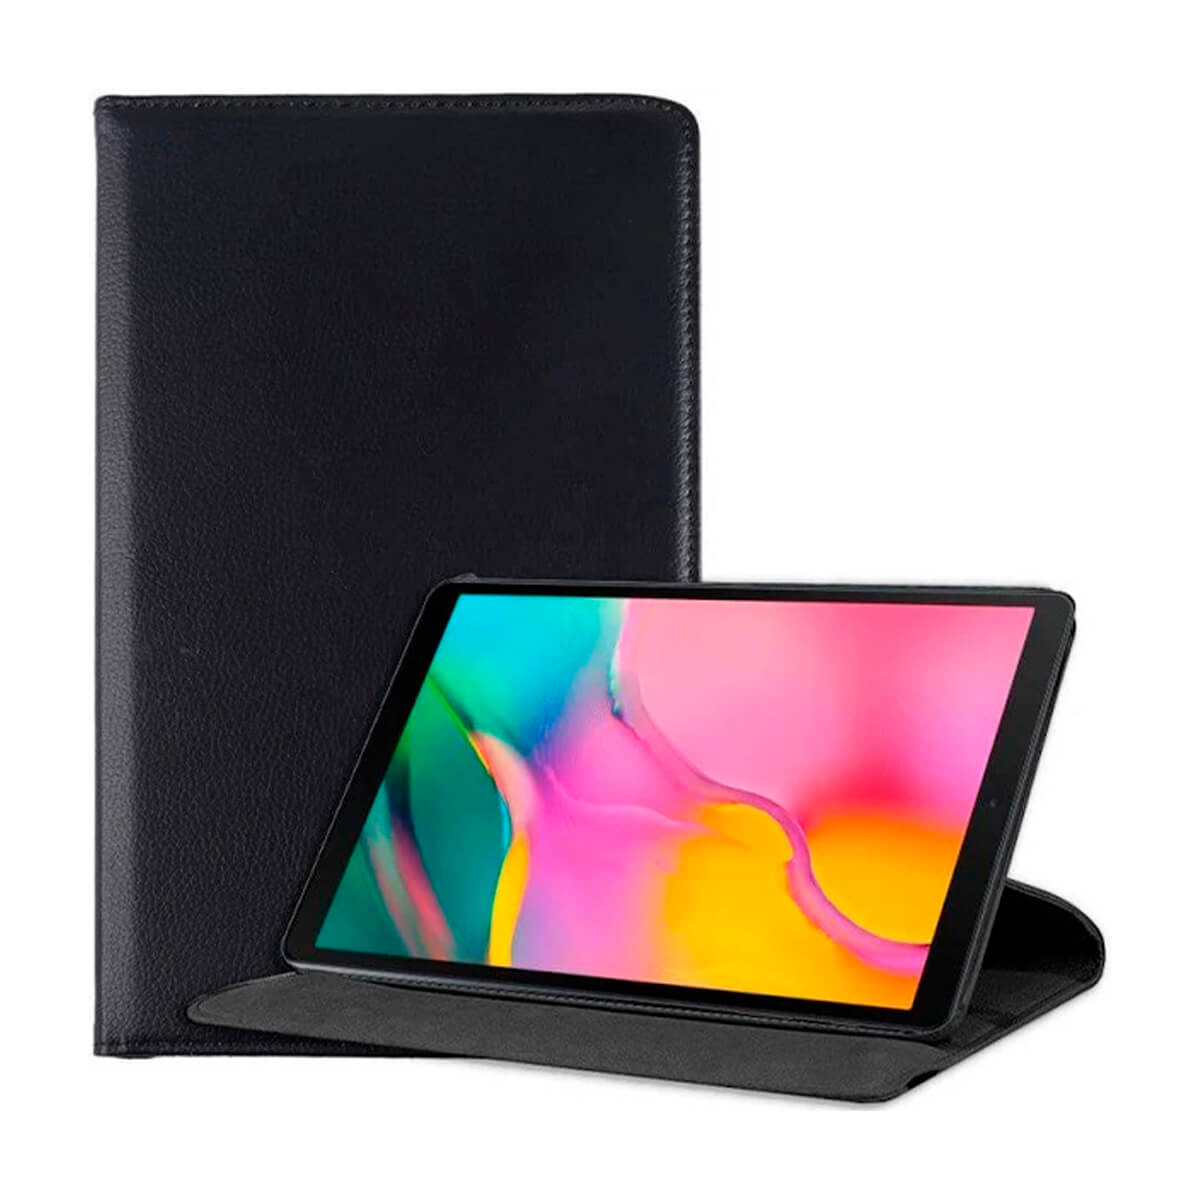 Funda libro compatible Negro (Black) para Samsung Galaxy Tab A P580/585